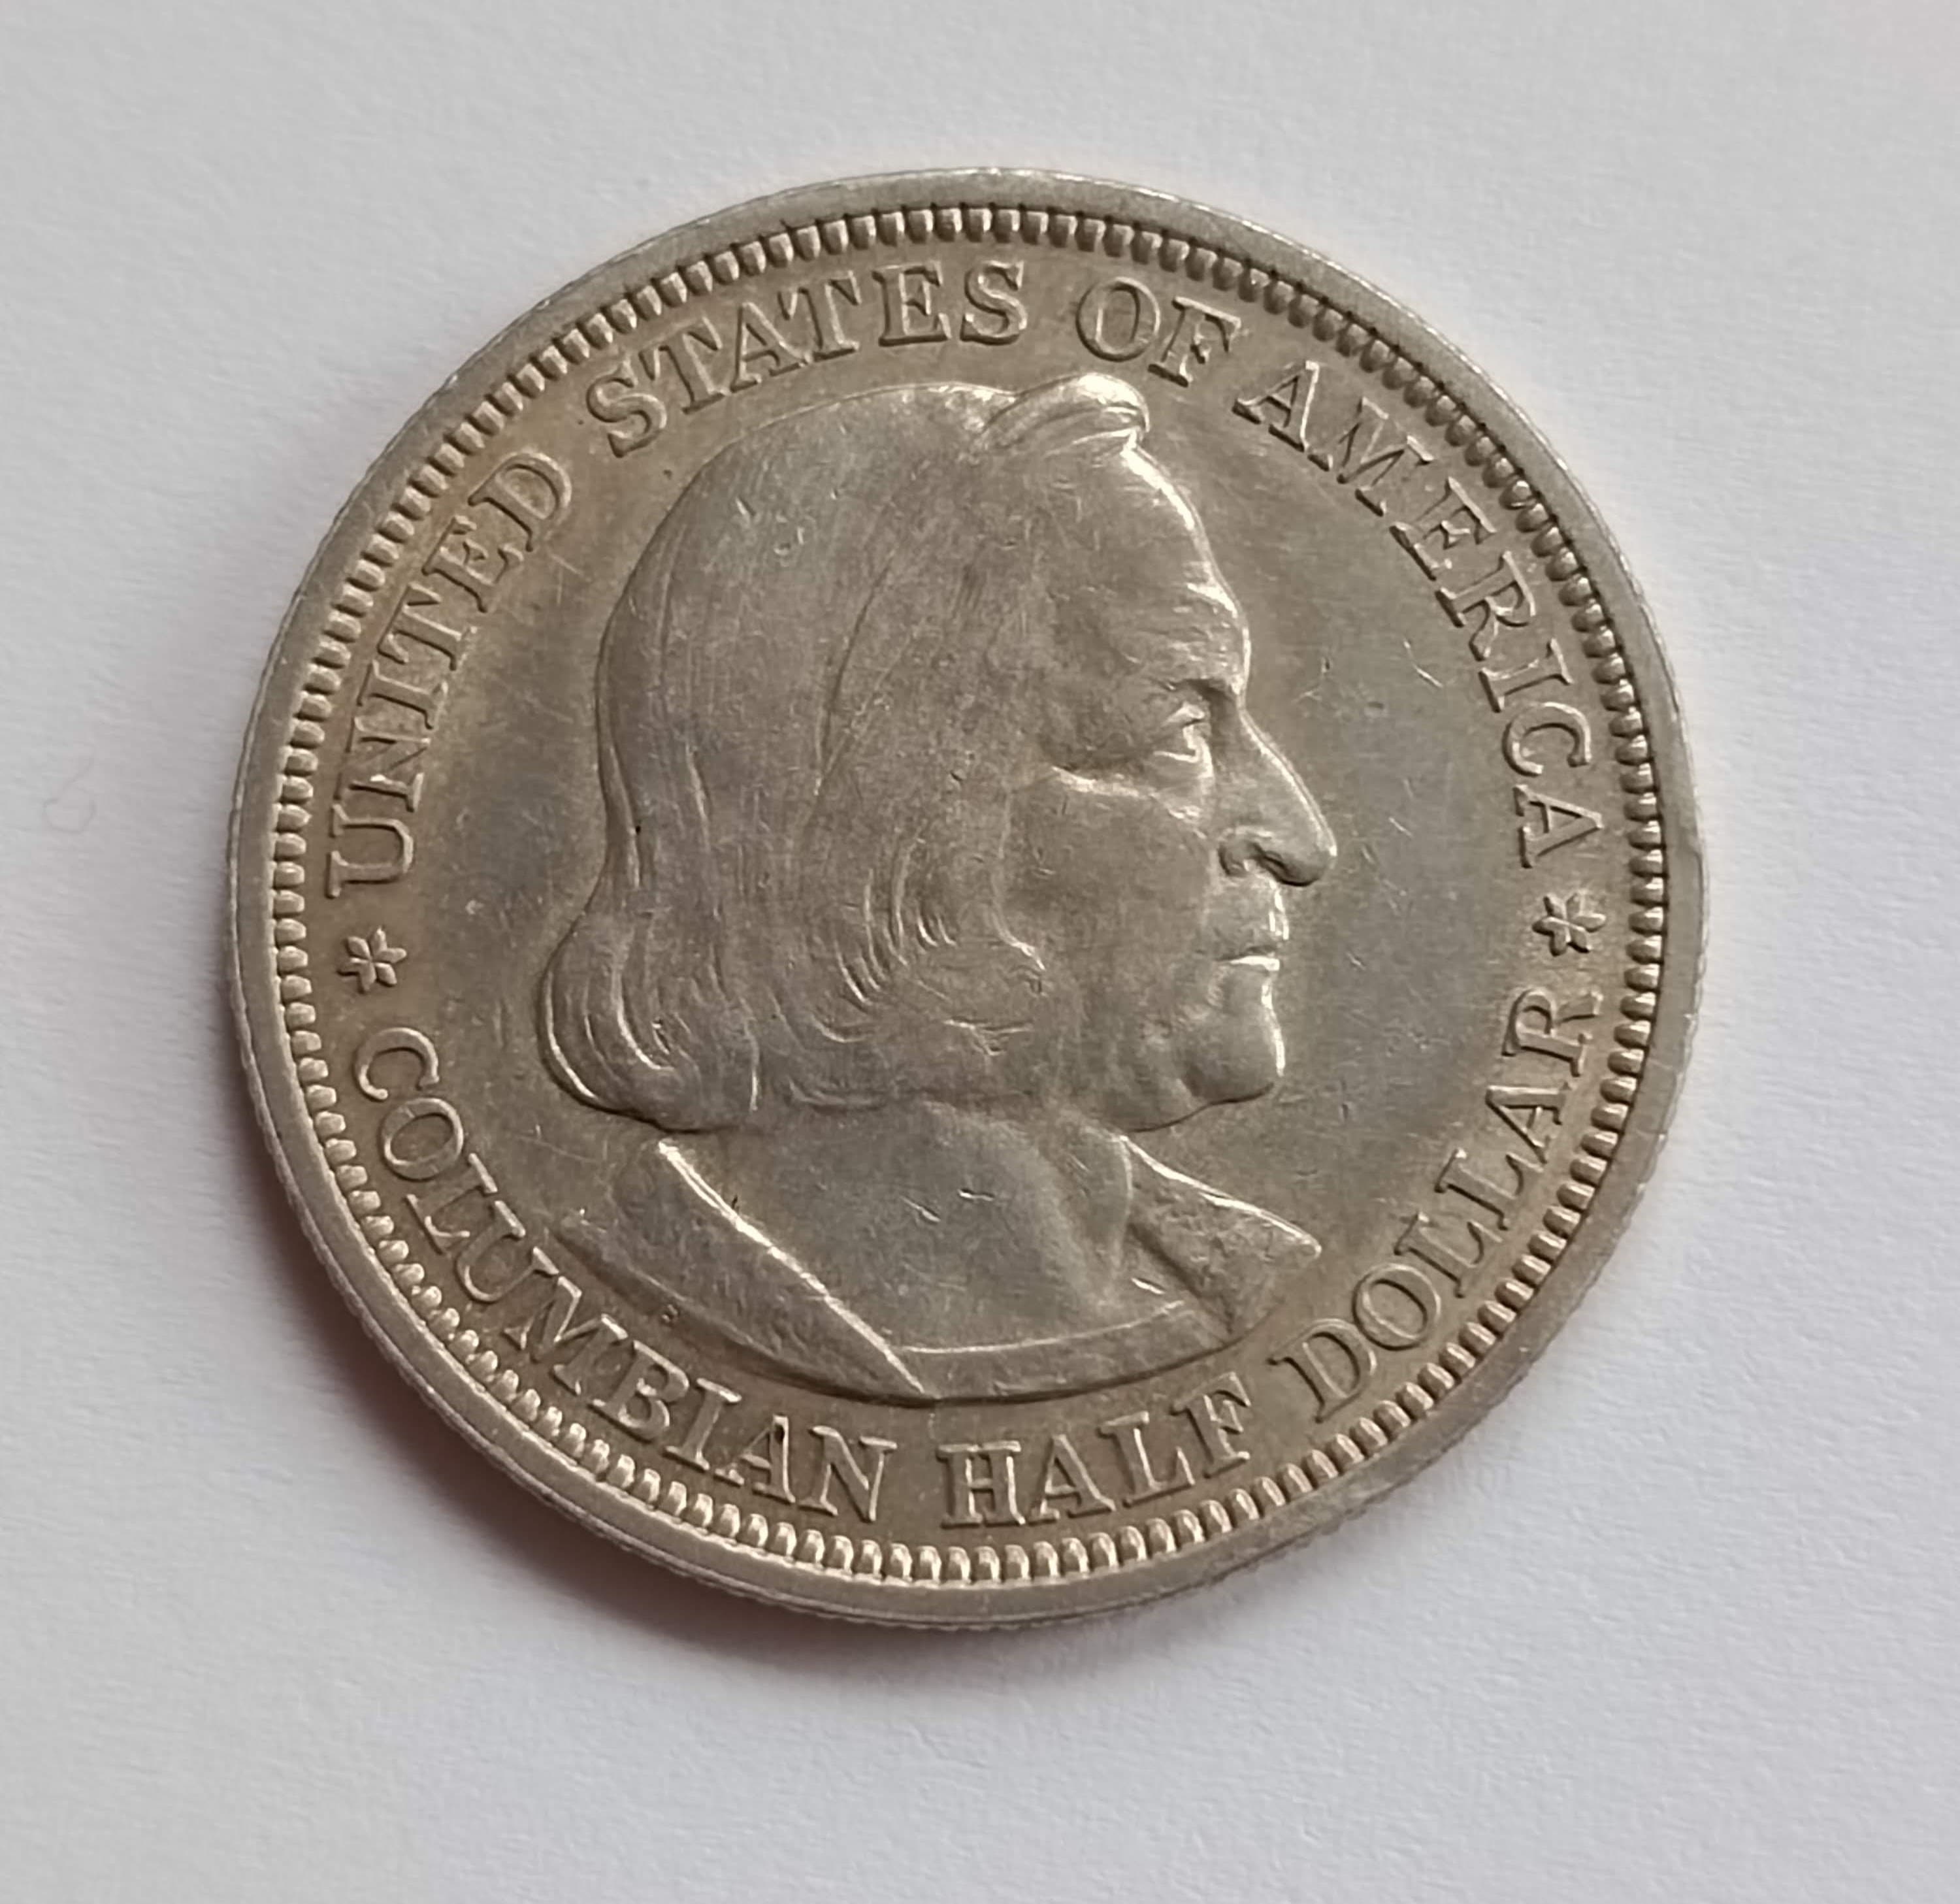 1/2 dollar 1893